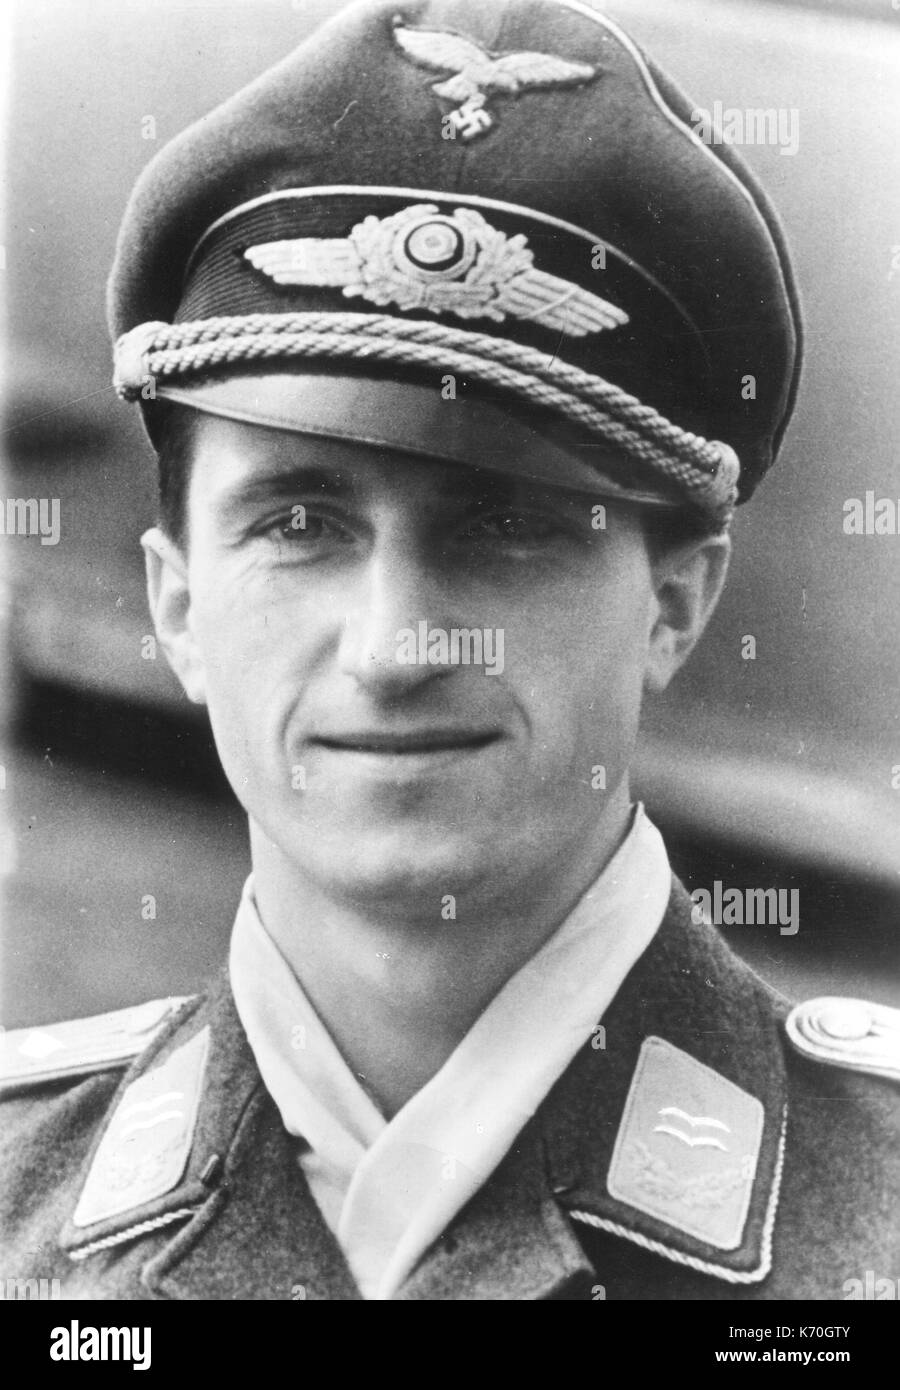 Walter Nowotny (1920-1944) war ein österreichischer geborene Deutsche fighter Ace des Zweiten Weltkriegs. Er prüfte die Messerschmitt Me 262 Jet Fighter und war in einem Crash in diesem Flugzeug folgenden Air Combat mit AAF-Kämpfer am 8. November 1944 getötet. kein Datum oder Ort. Stockfoto